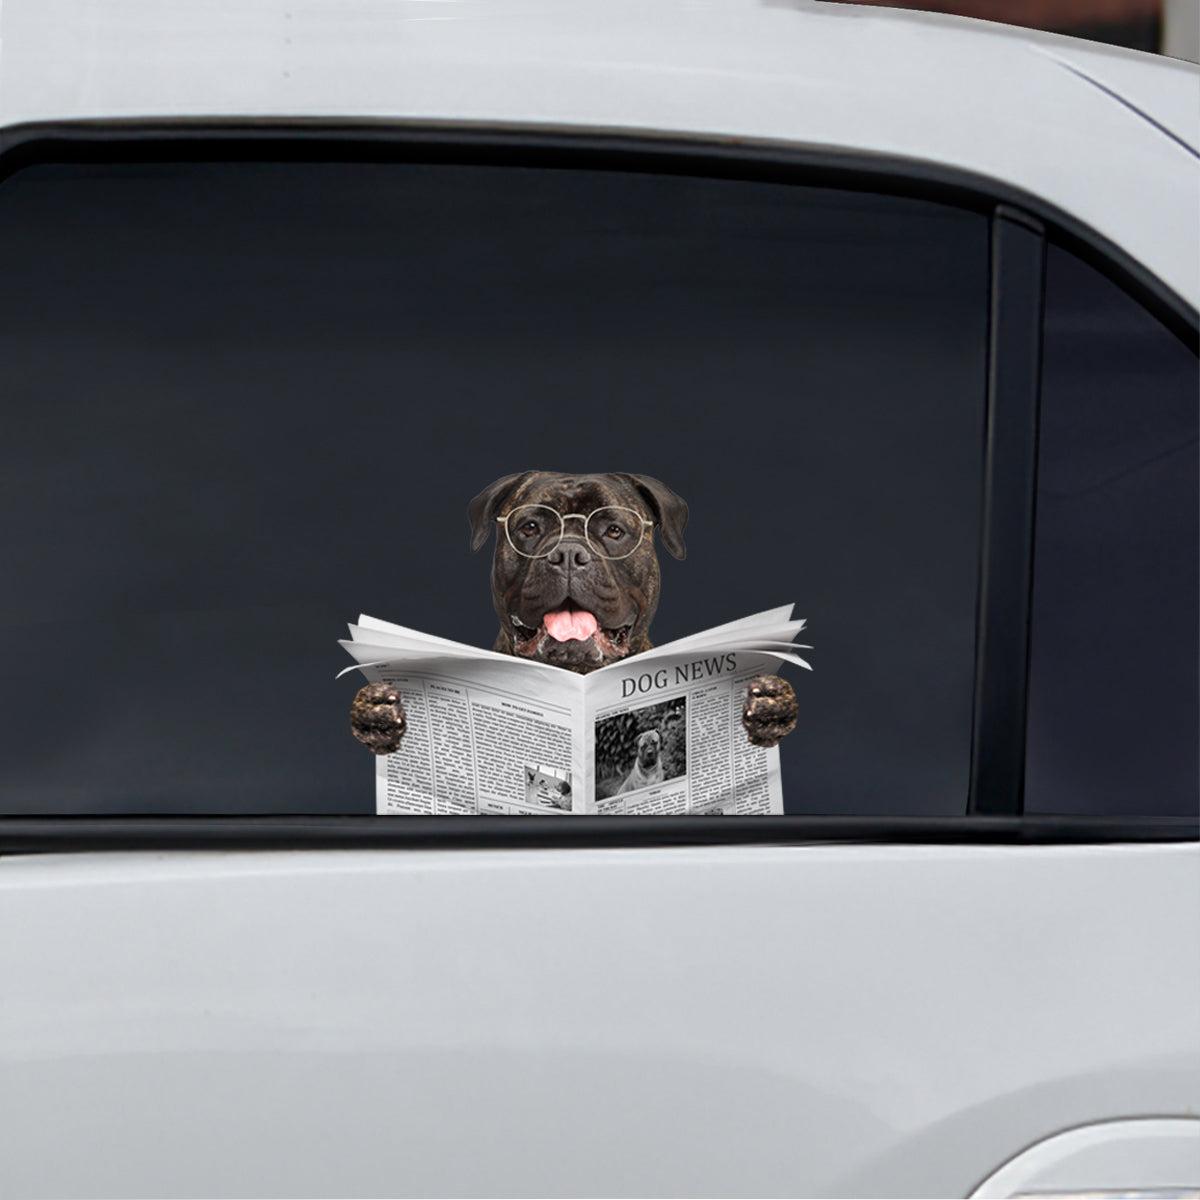 Avez-vous lu les nouvelles aujourd'hui - Bullmastiff Autocollant de voiture/porte/réfrigérateur/ordinateur portable V1